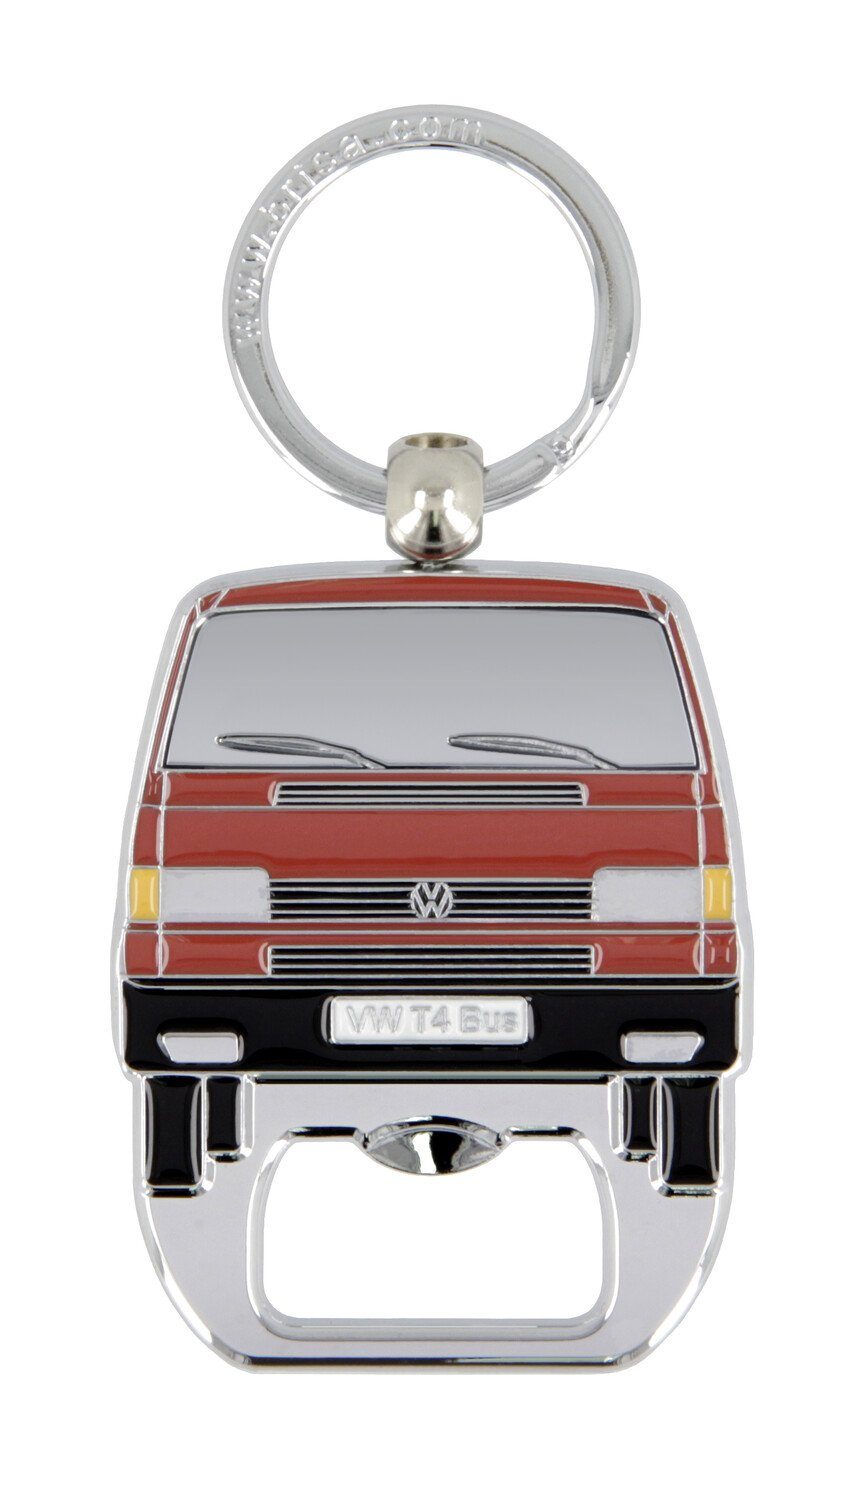 Flaschenöffner Collection im Bus BRISA Flaschenöffner Rot Integrierter Schlüsselanhänger Design, mit Schlüsselring VW Bulli Volkswagen T4 by